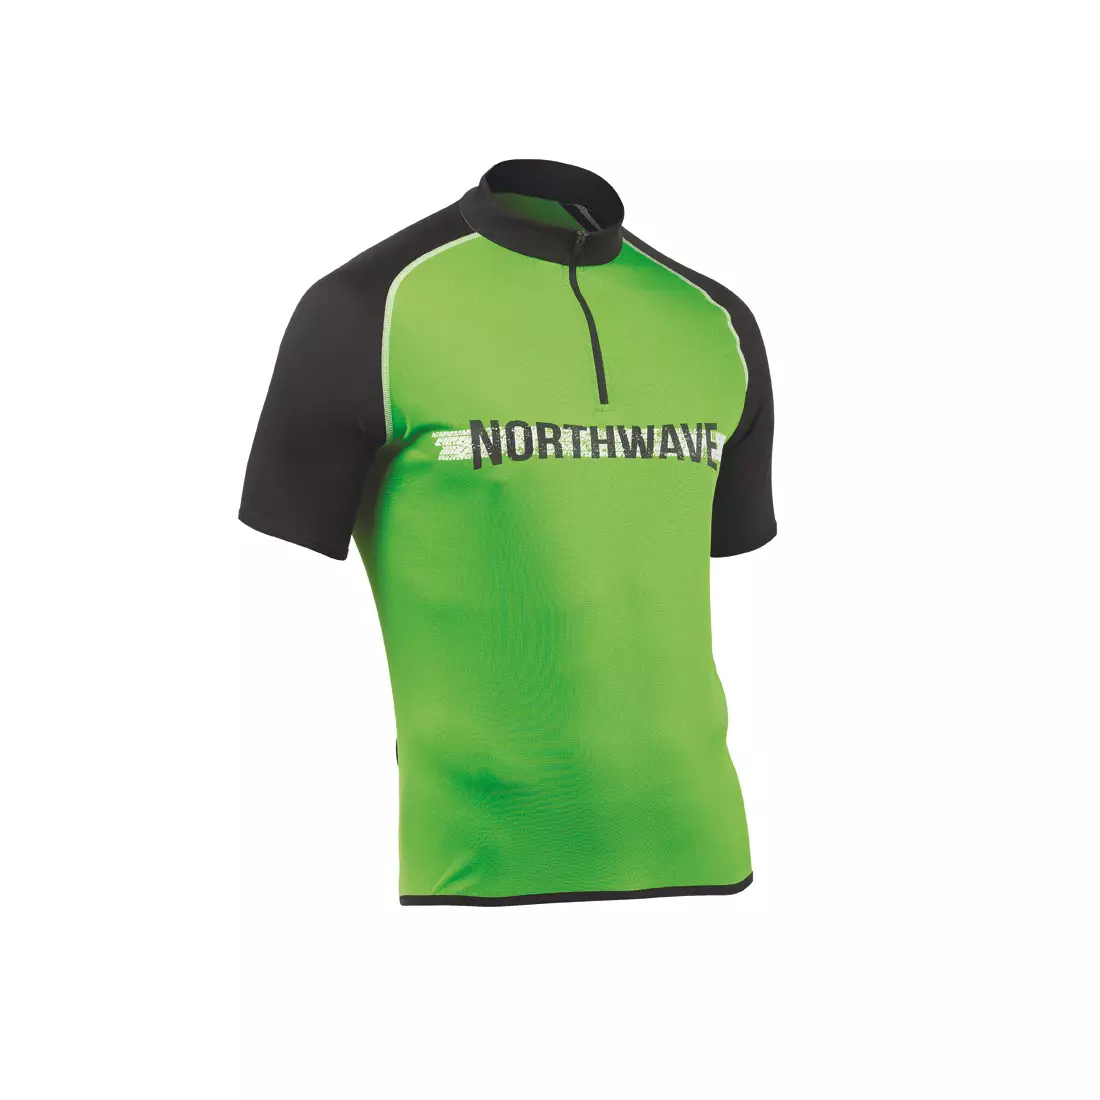 Pánský cyklistický dres NORTHWAVE ROCKER, černo-zelený